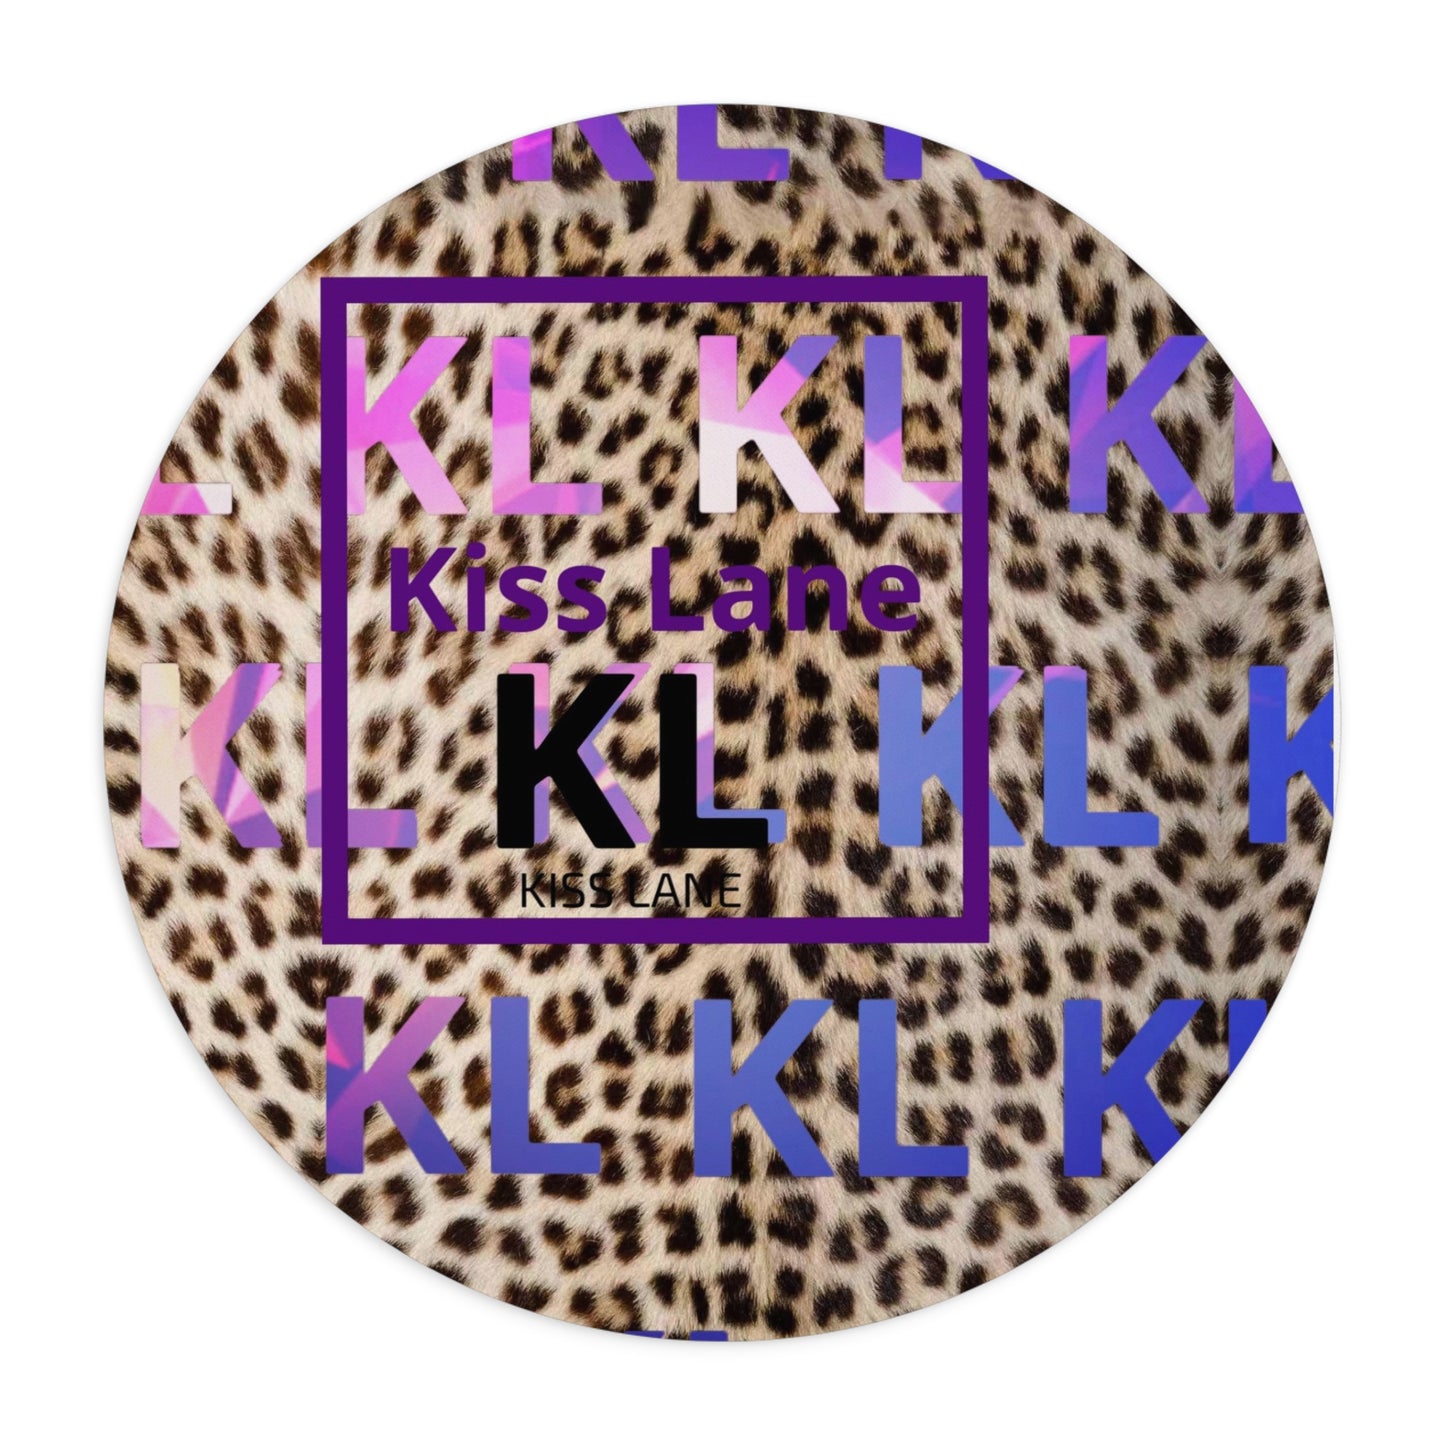 Kiss Lane leopard Mouse Pad